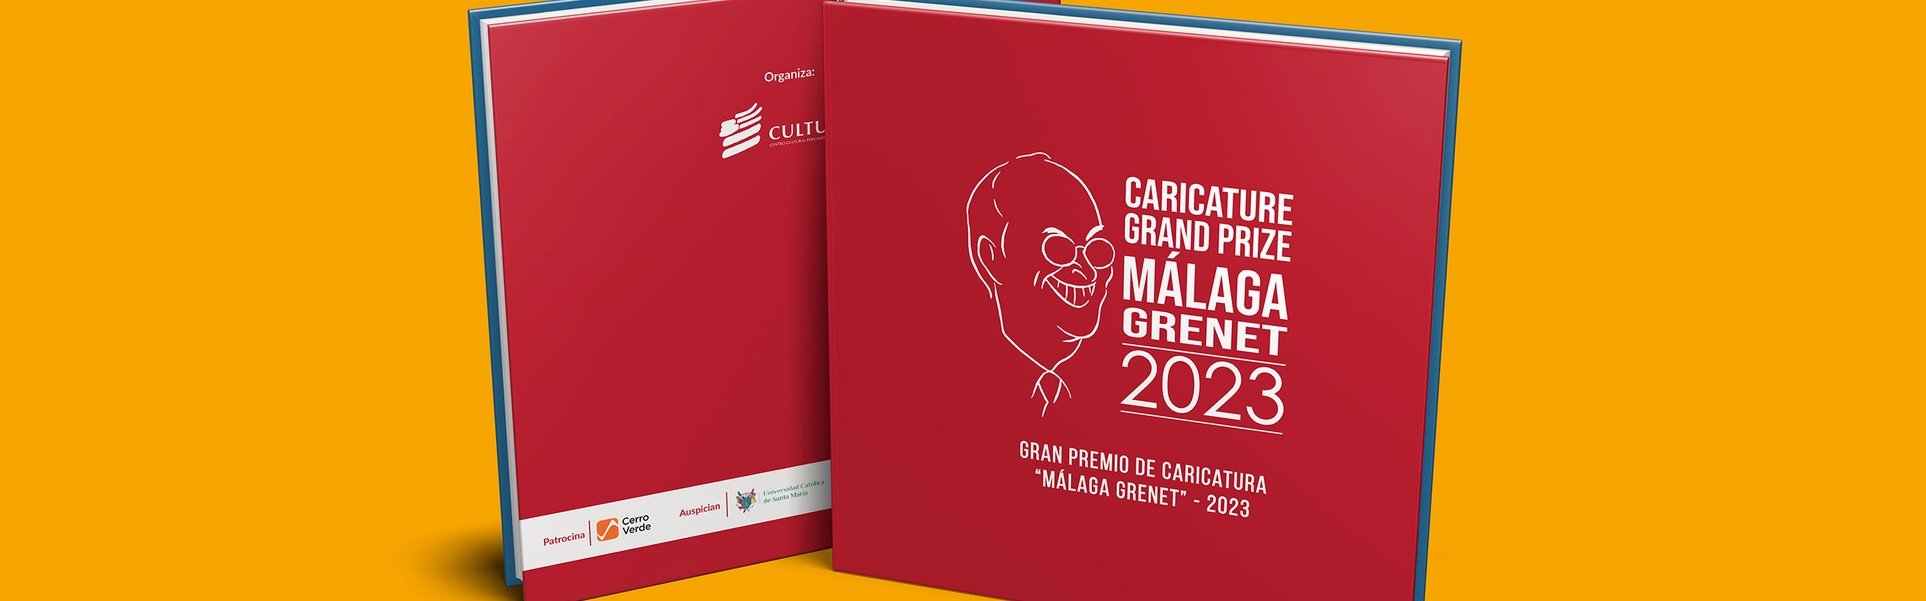 Catálogo del Gran Premio de Caricatura Málaga Grenet en Perú